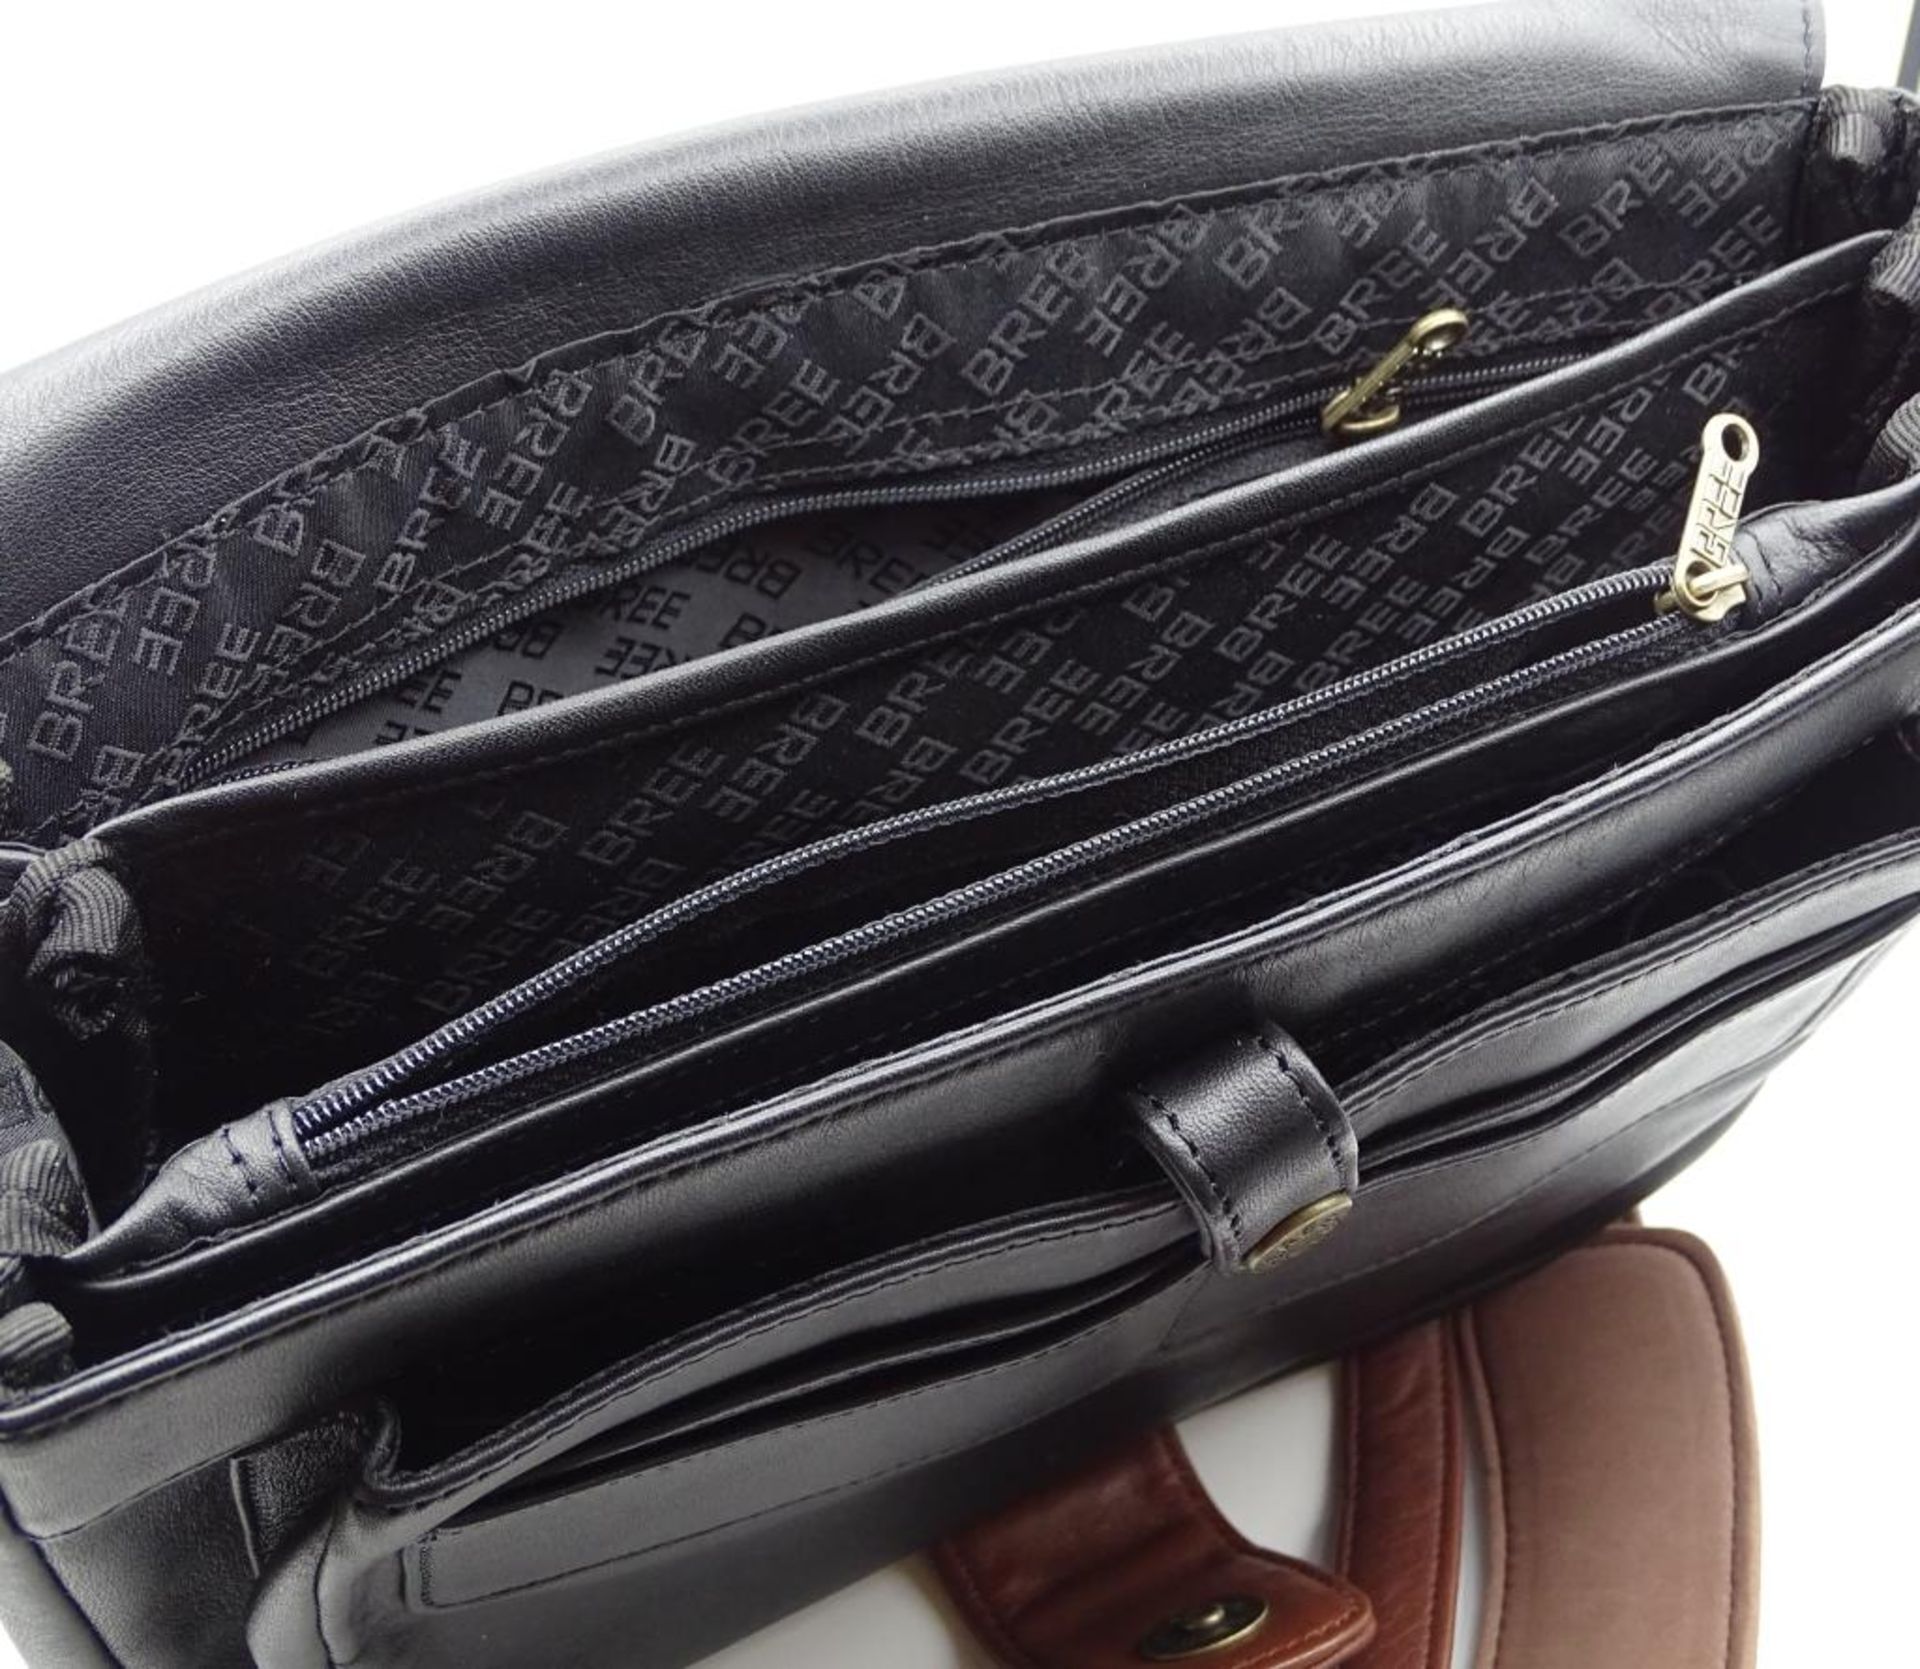 Damen Handtasche, "Bree",schwarz/braun, neuwertiger Zustand,27x23cm - Bild 4 aus 6